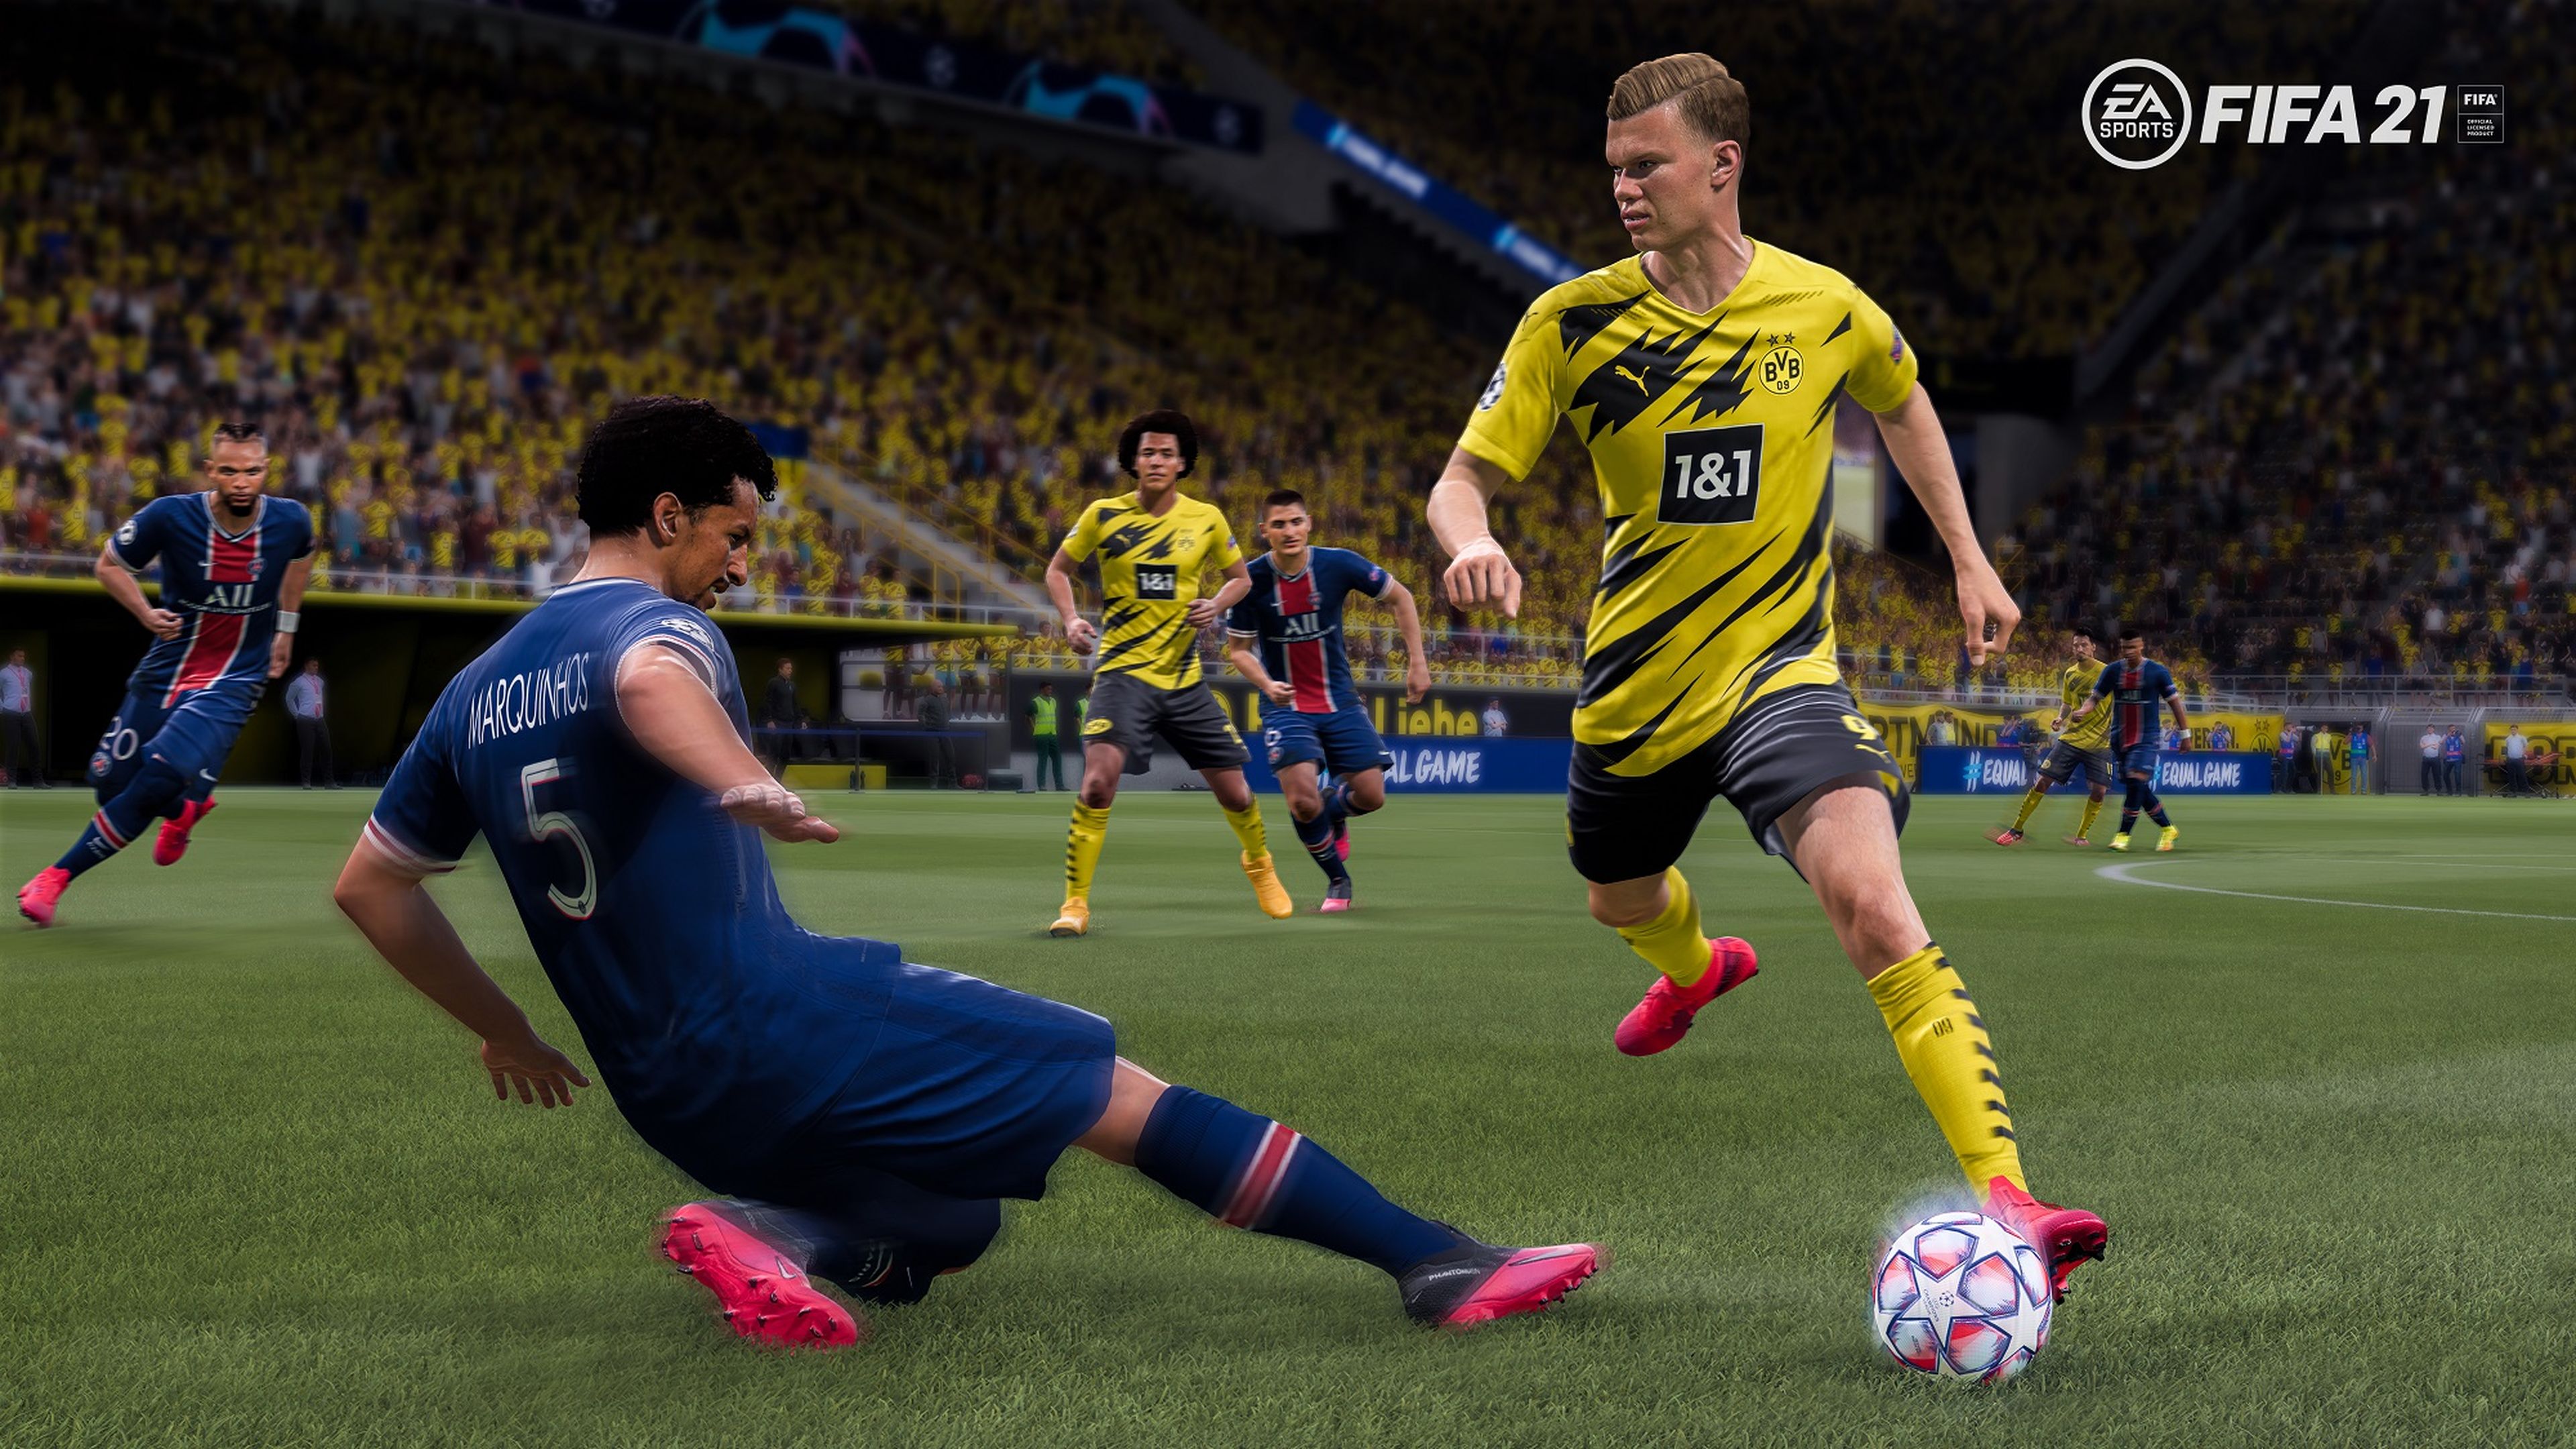 Impresiones de los modos Carrera y Kick Off de FIFA 21 para PS4, Xbox One y PC